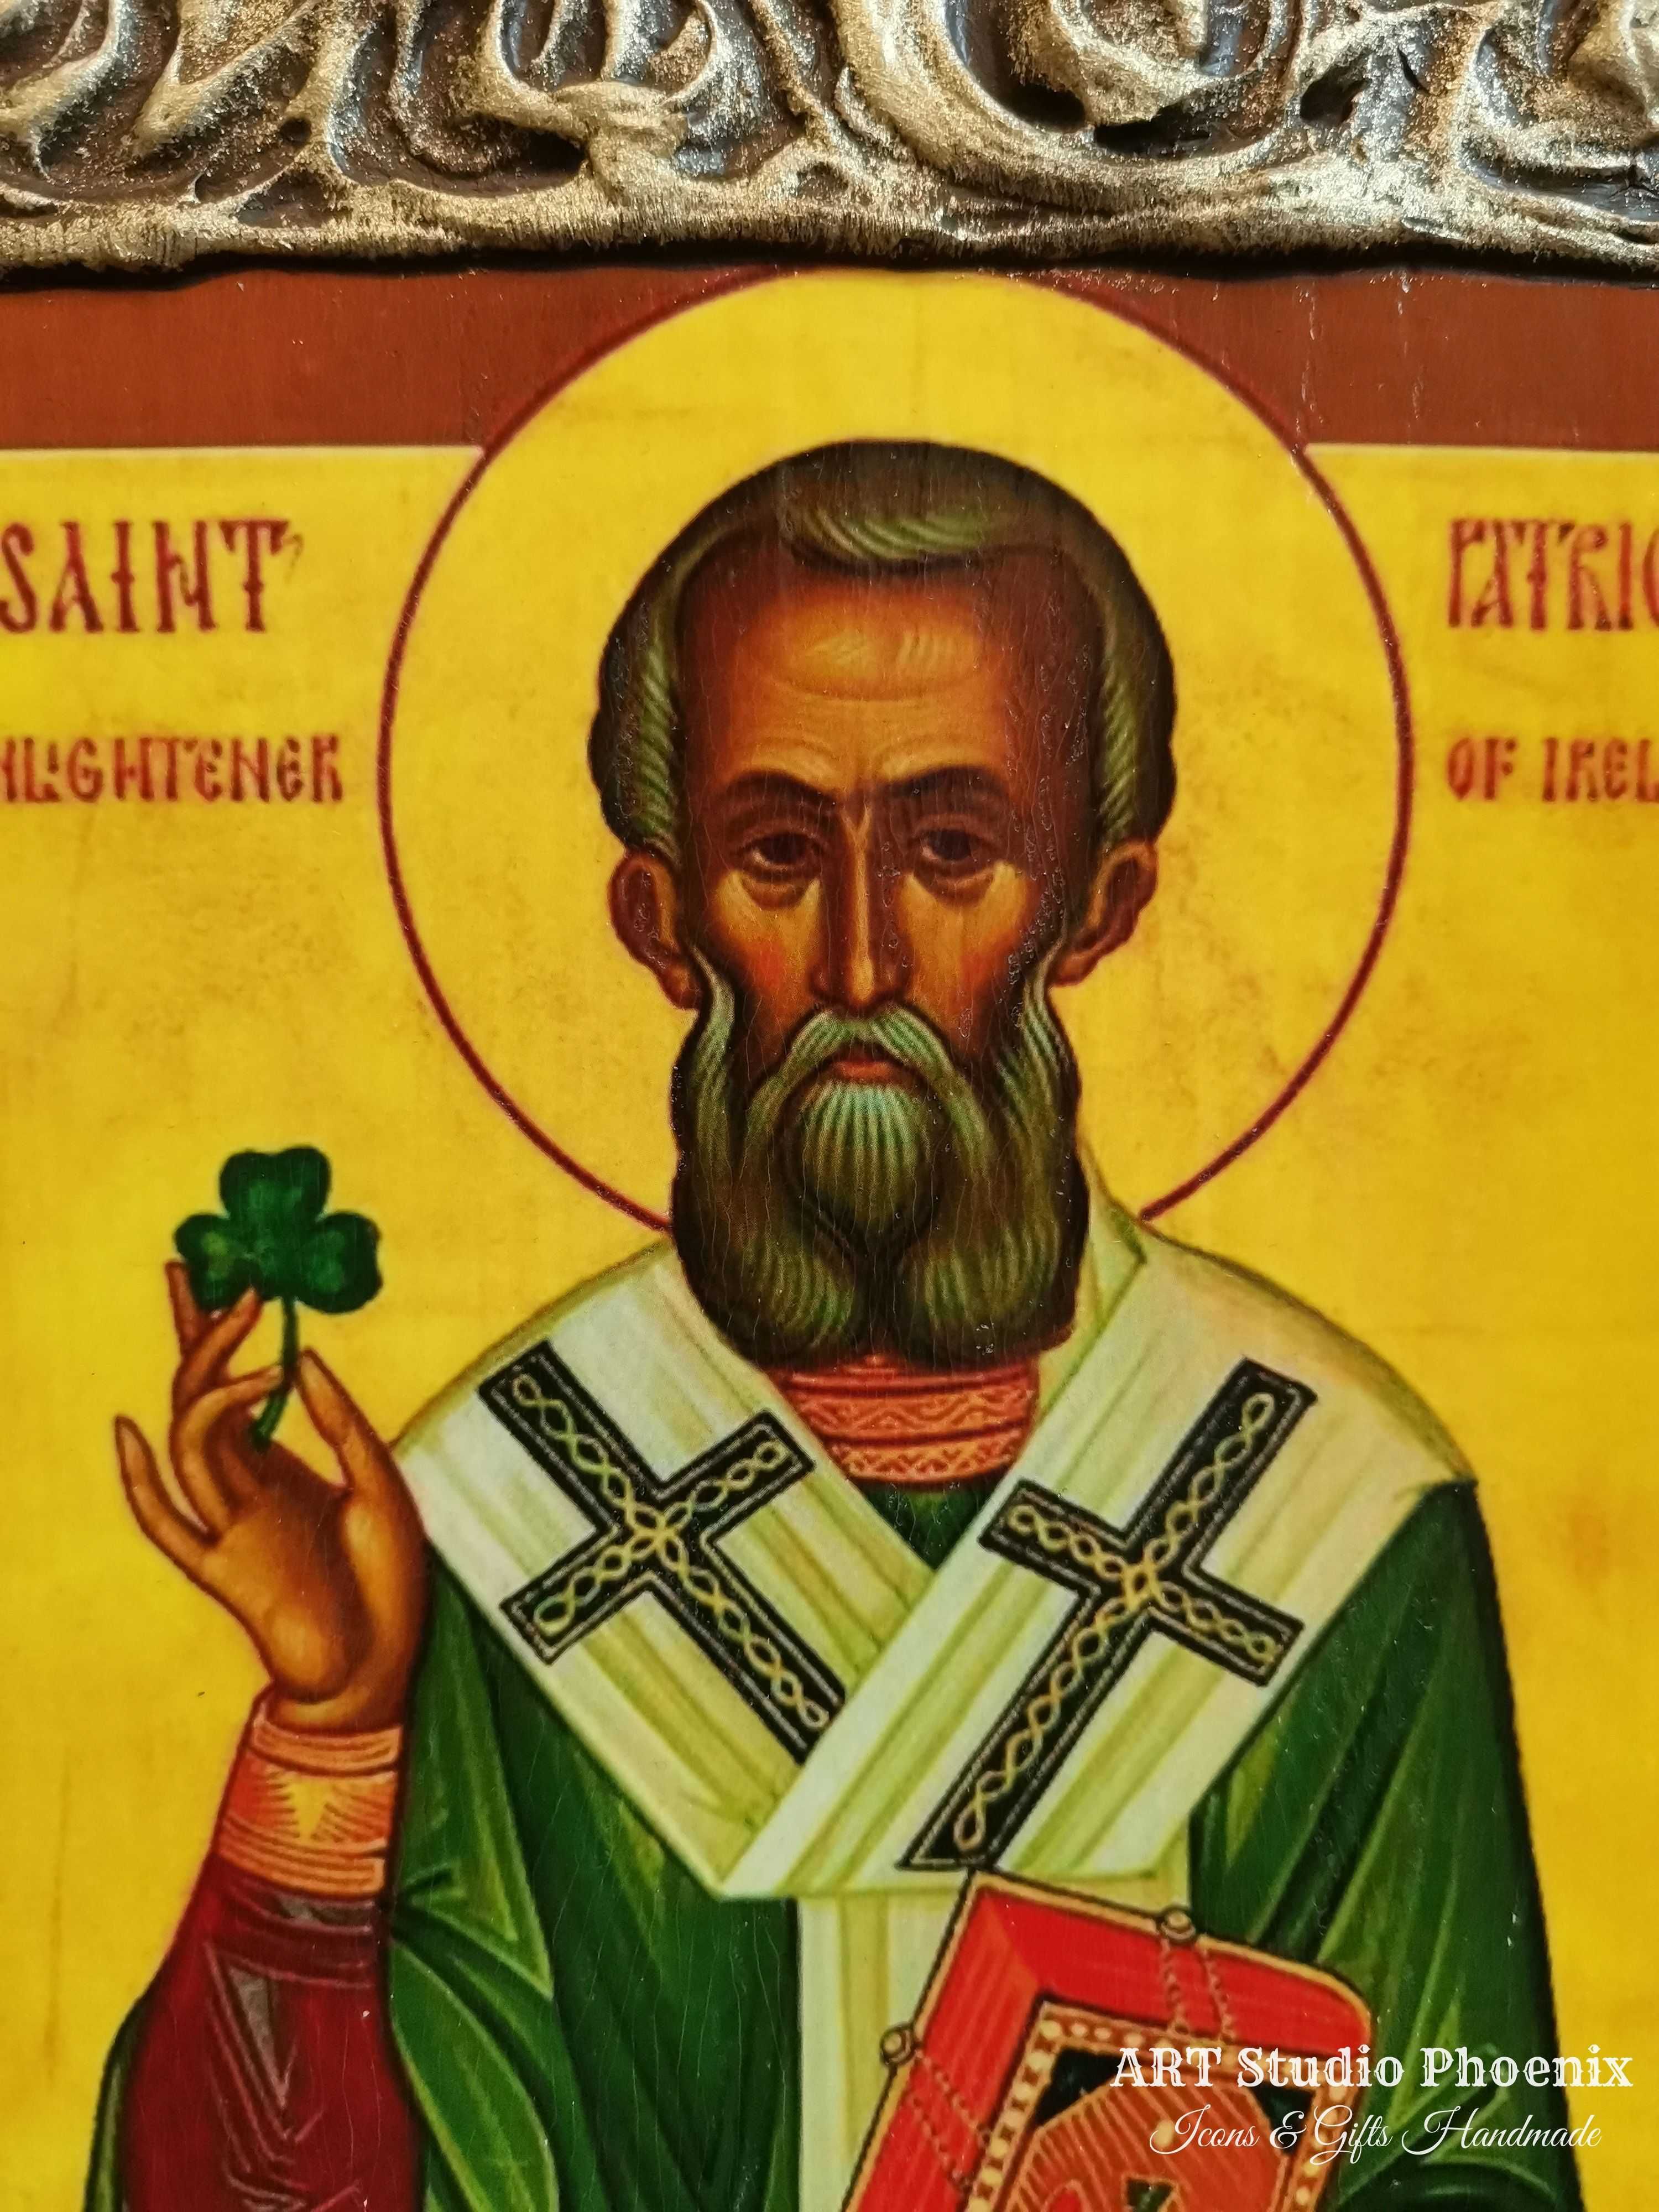 Икона на Свети Патрик icona Saint Patrick